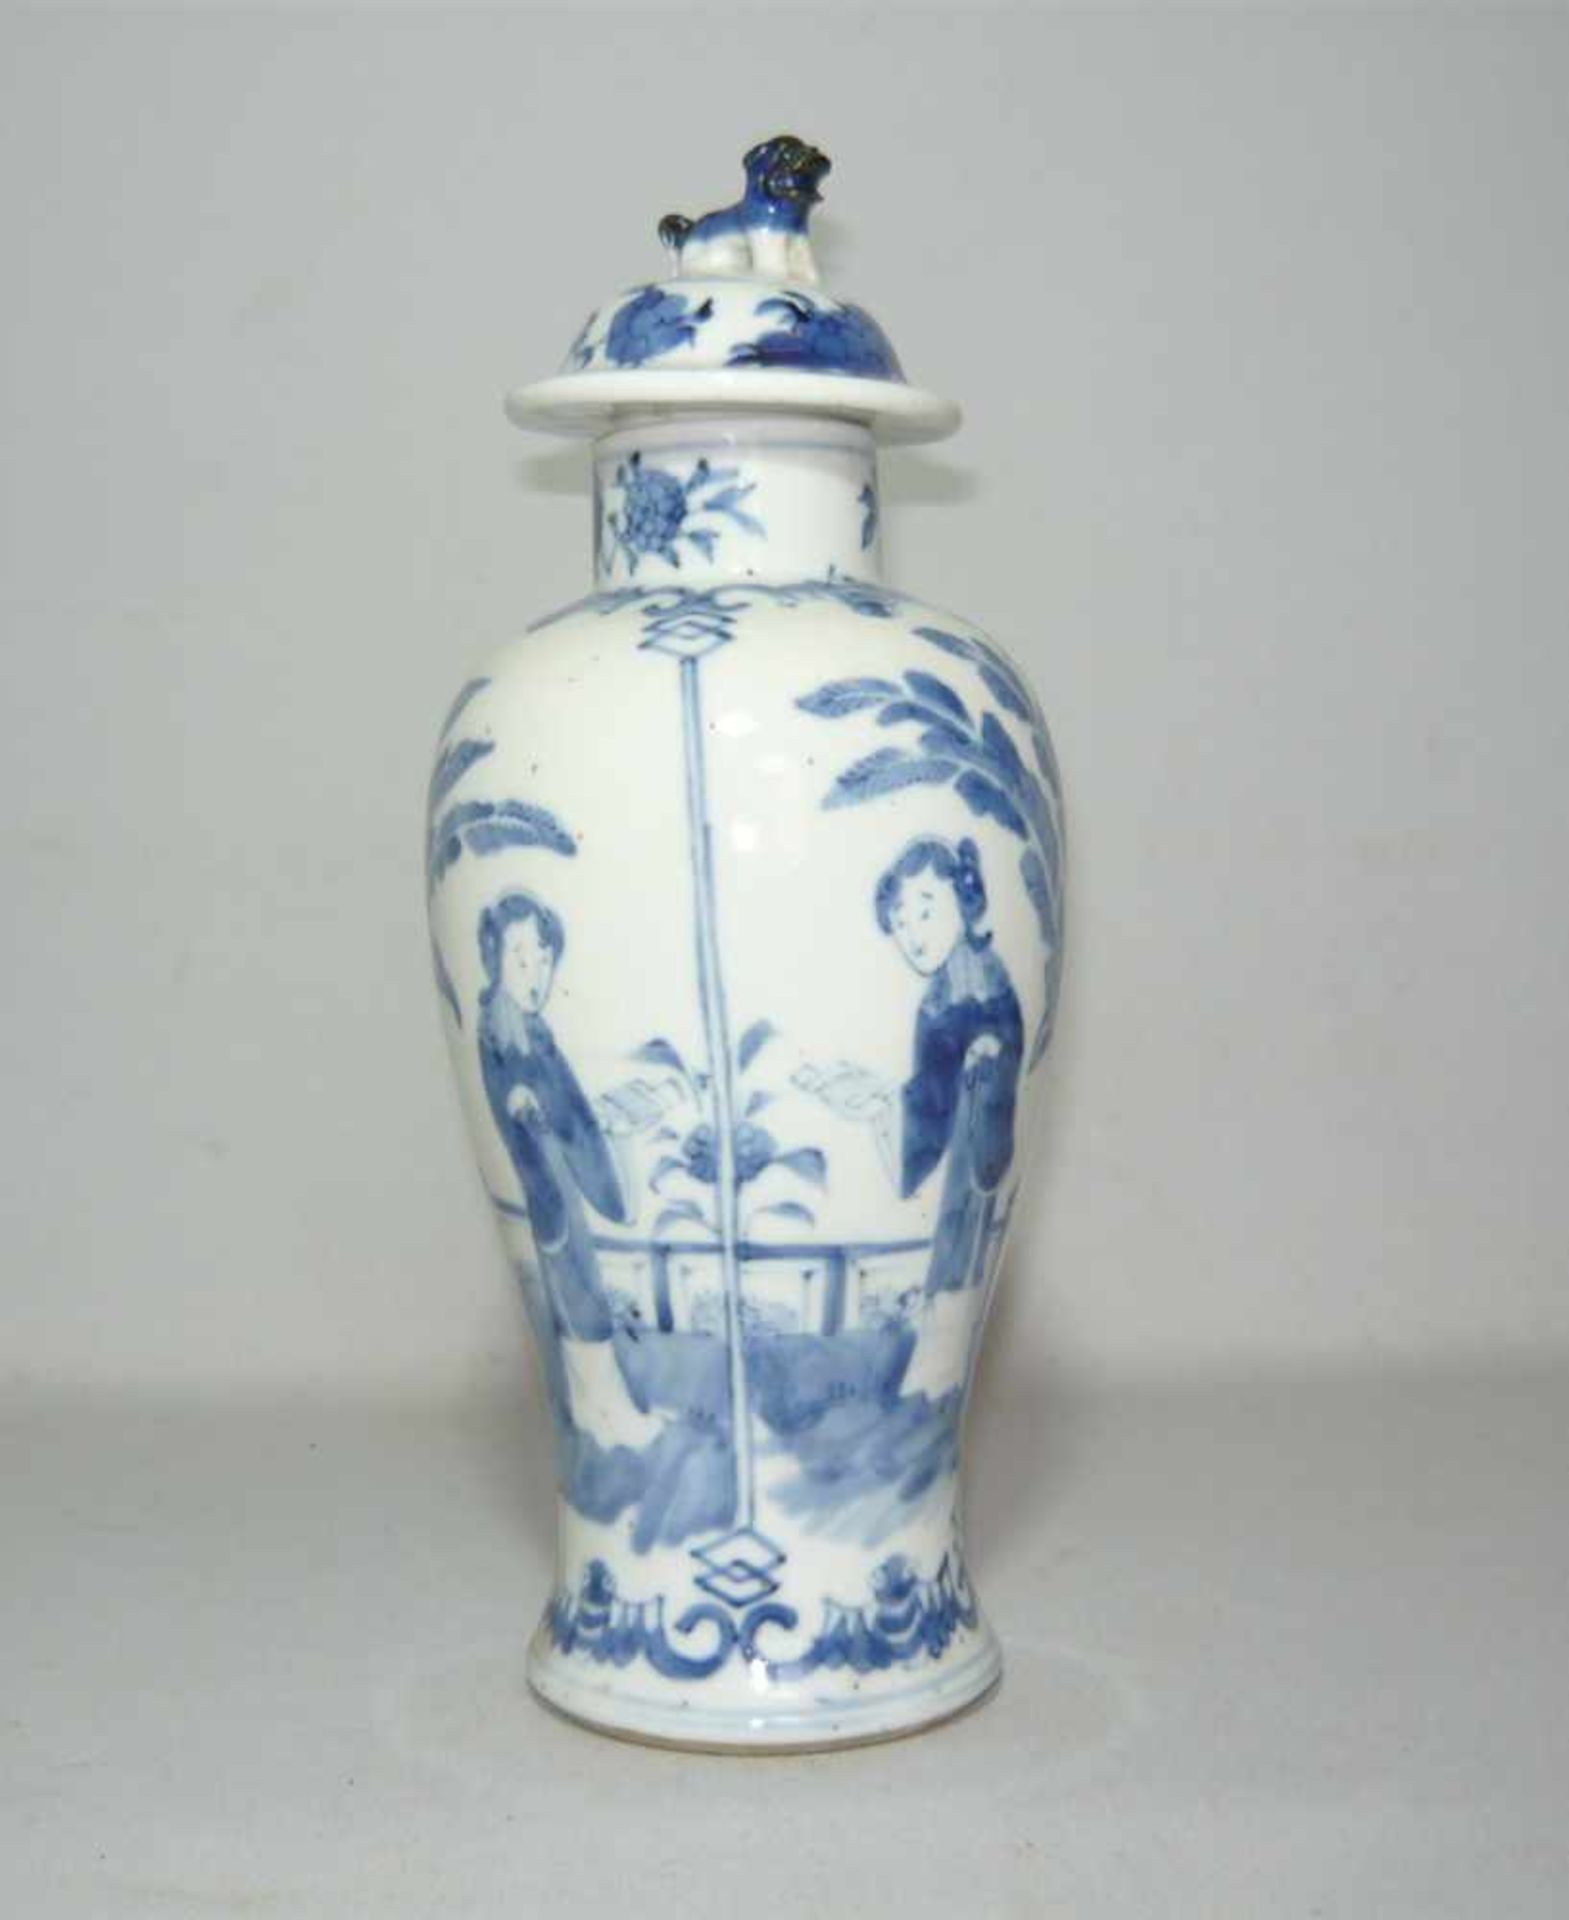 Formschöne Deckelvase. Umlaufende figürliche Szenerie. China, vor 1900. Im Boden gemarkt. H. ca. - Bild 2 aus 4